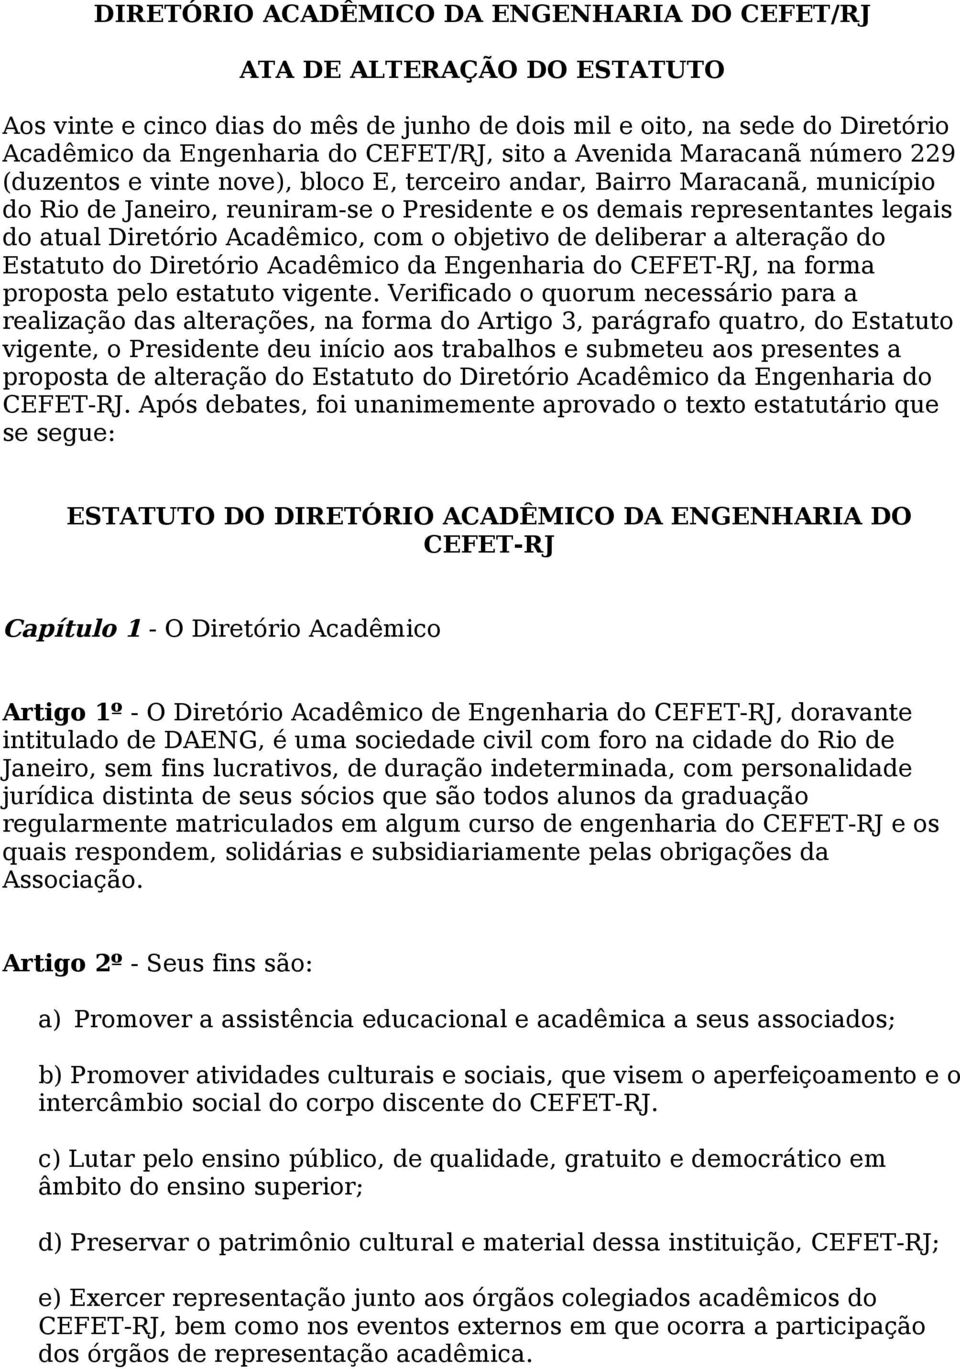 Diretório Acadêmico, com o objetivo de deliberar a alteração do Estatuto do Diretório Acadêmico da Engenharia do CEFET-RJ, na forma proposta pelo estatuto vigente.